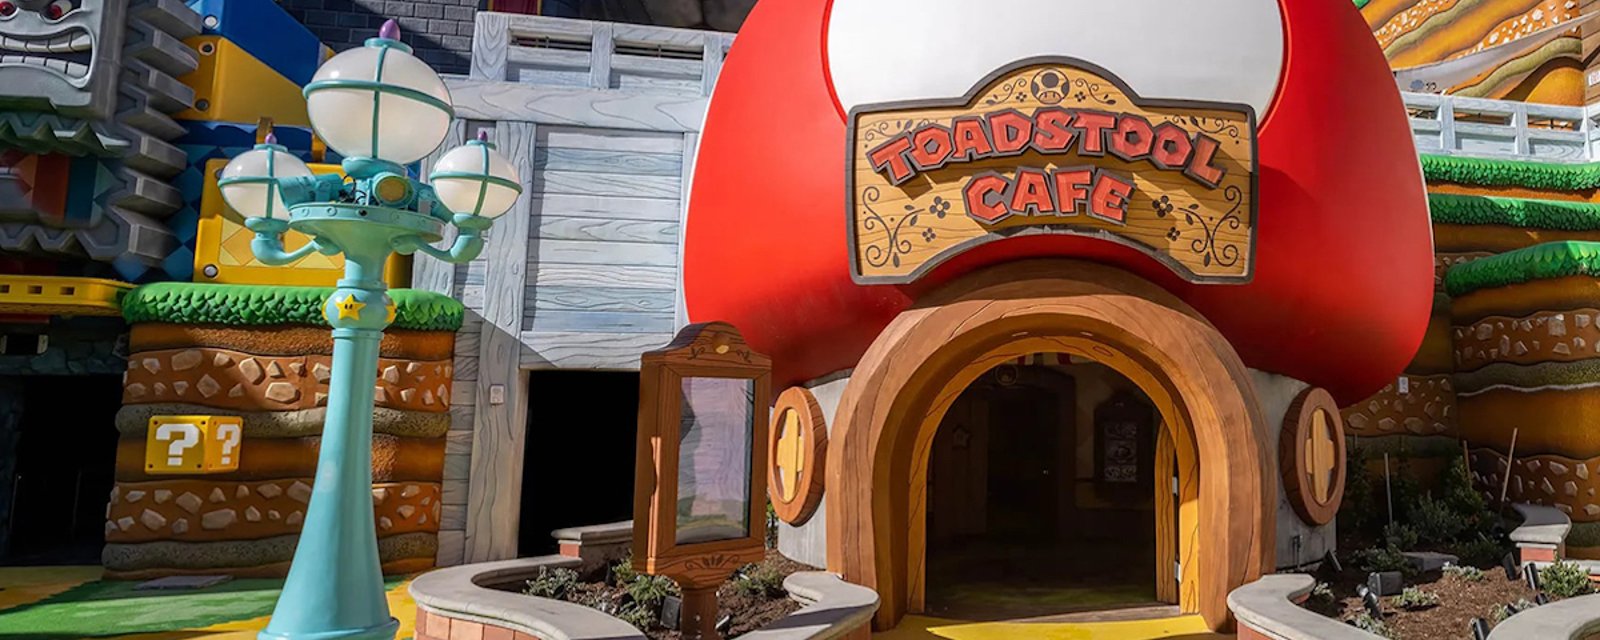 Un nouveau restaurant Mario Bros ouvre ses portes